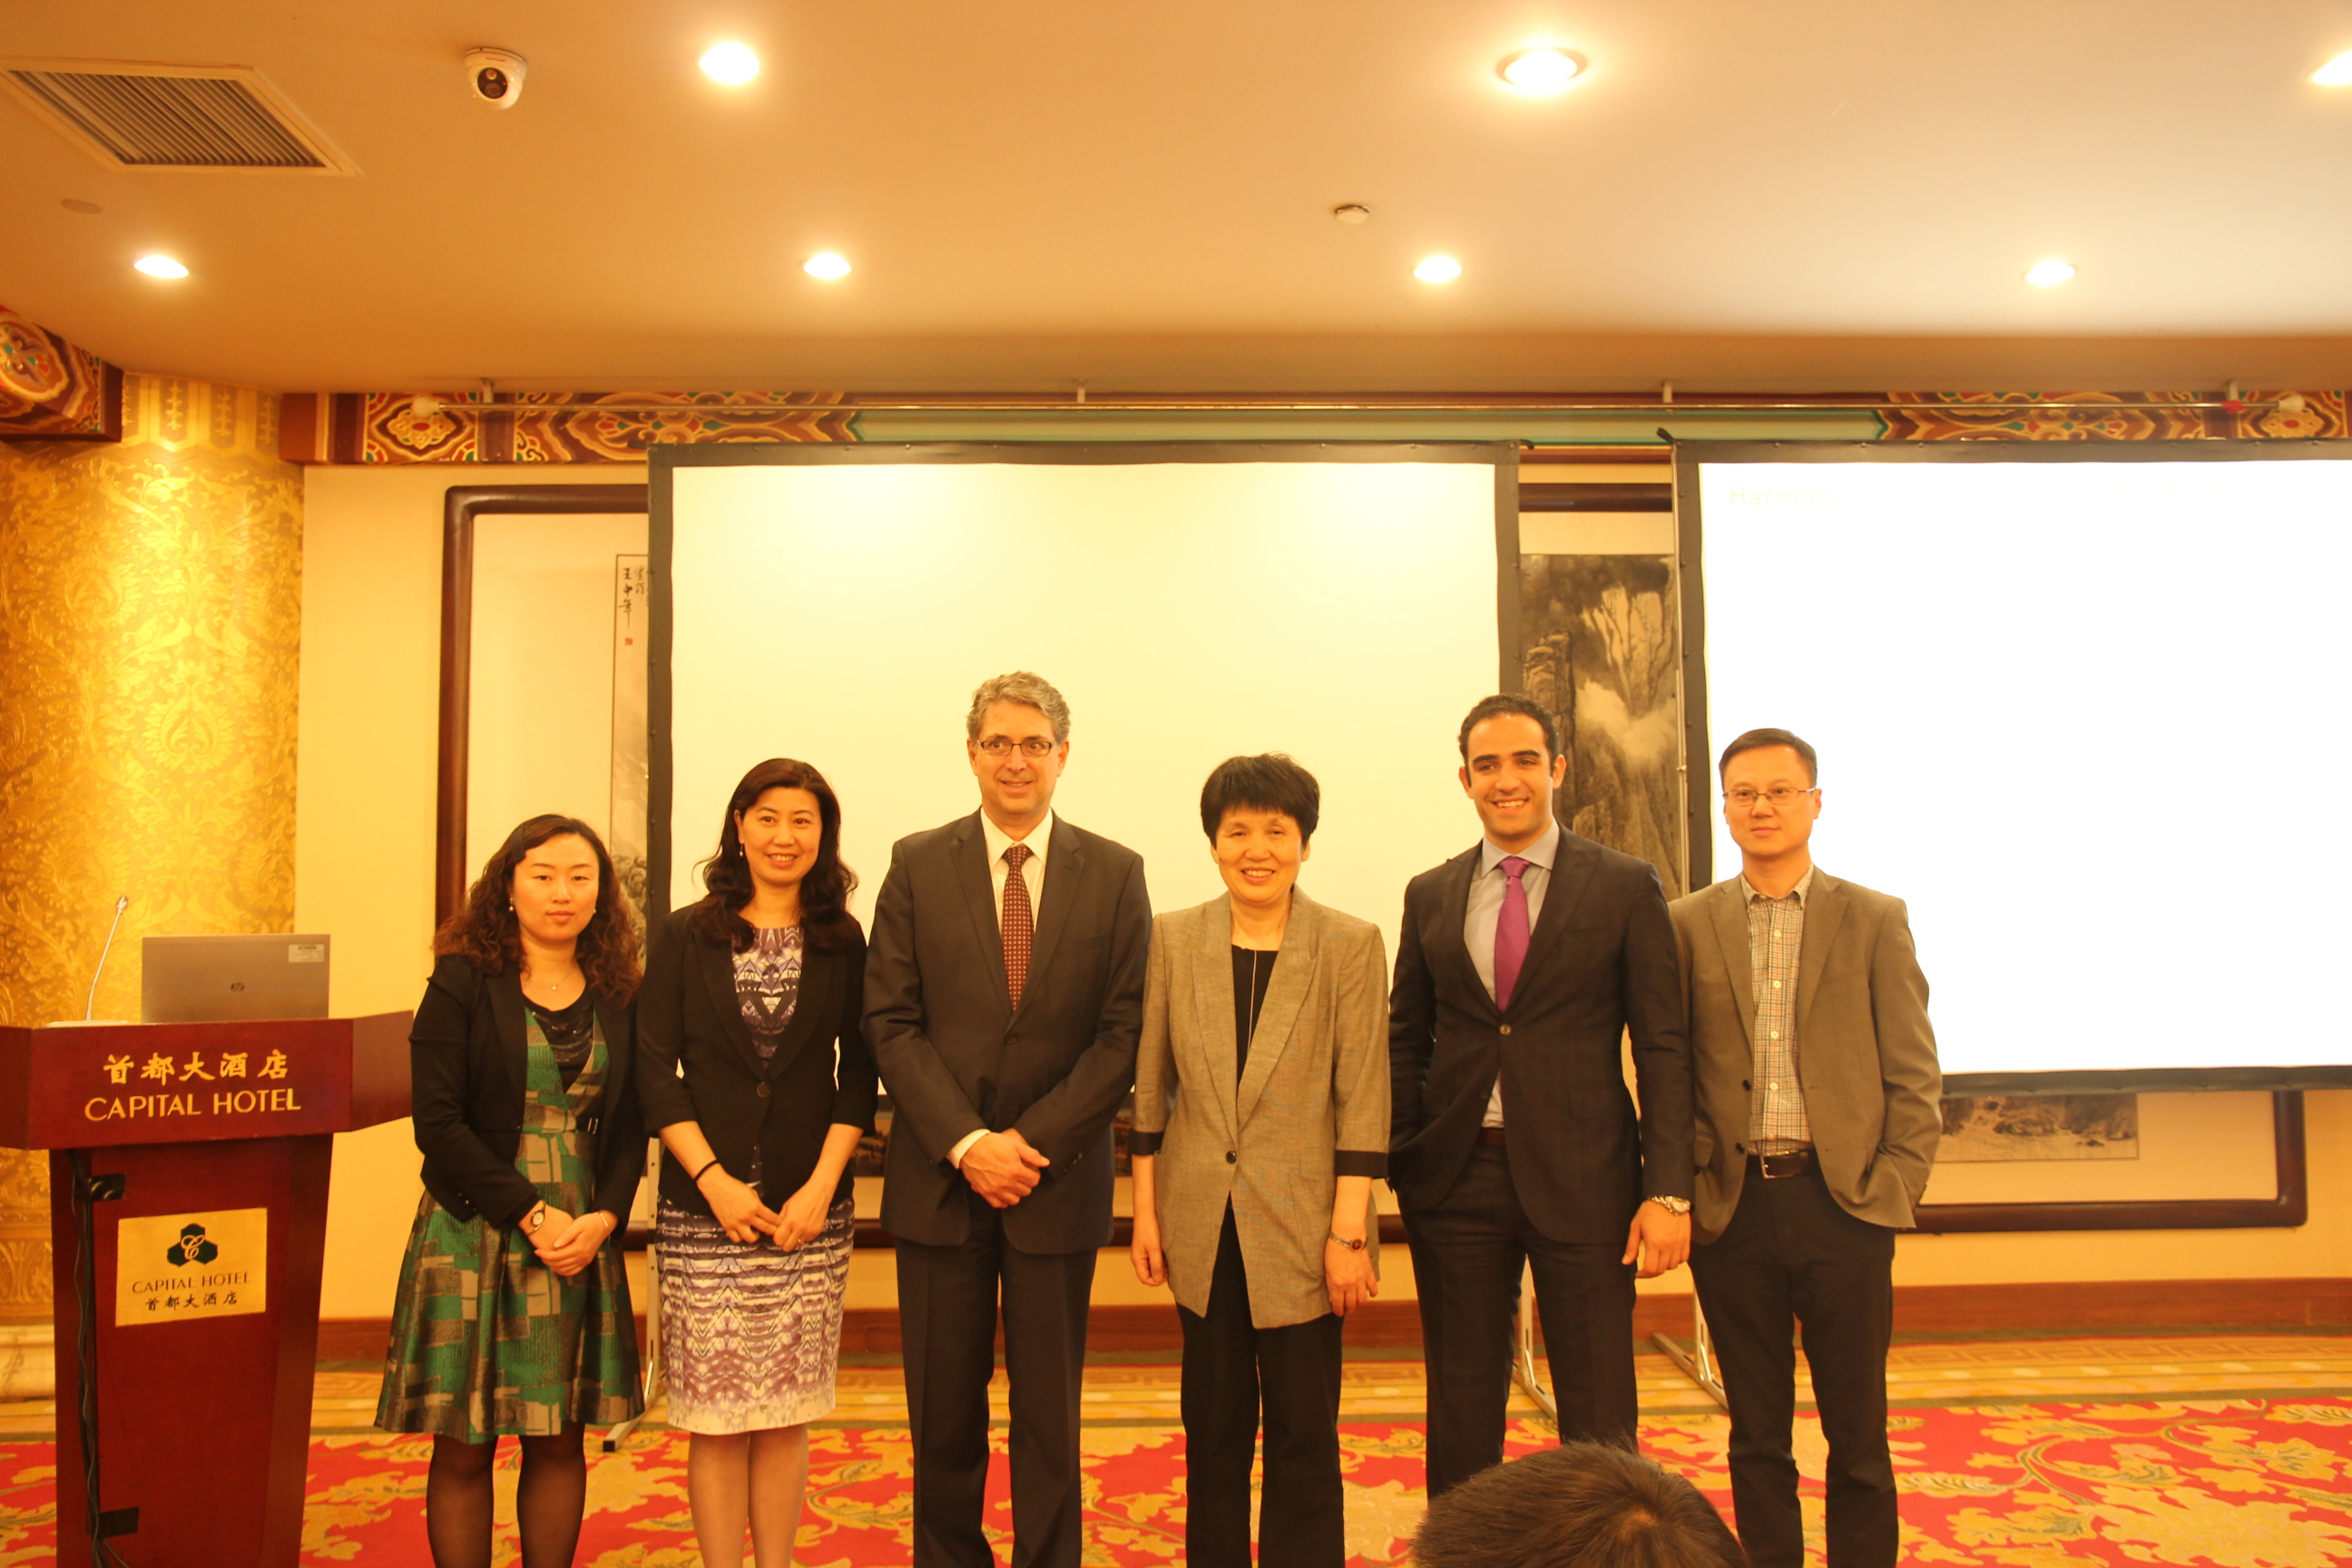 第二届中国母胎医学大会盛大开幕 罗氏带来NIPT微阵列新技术